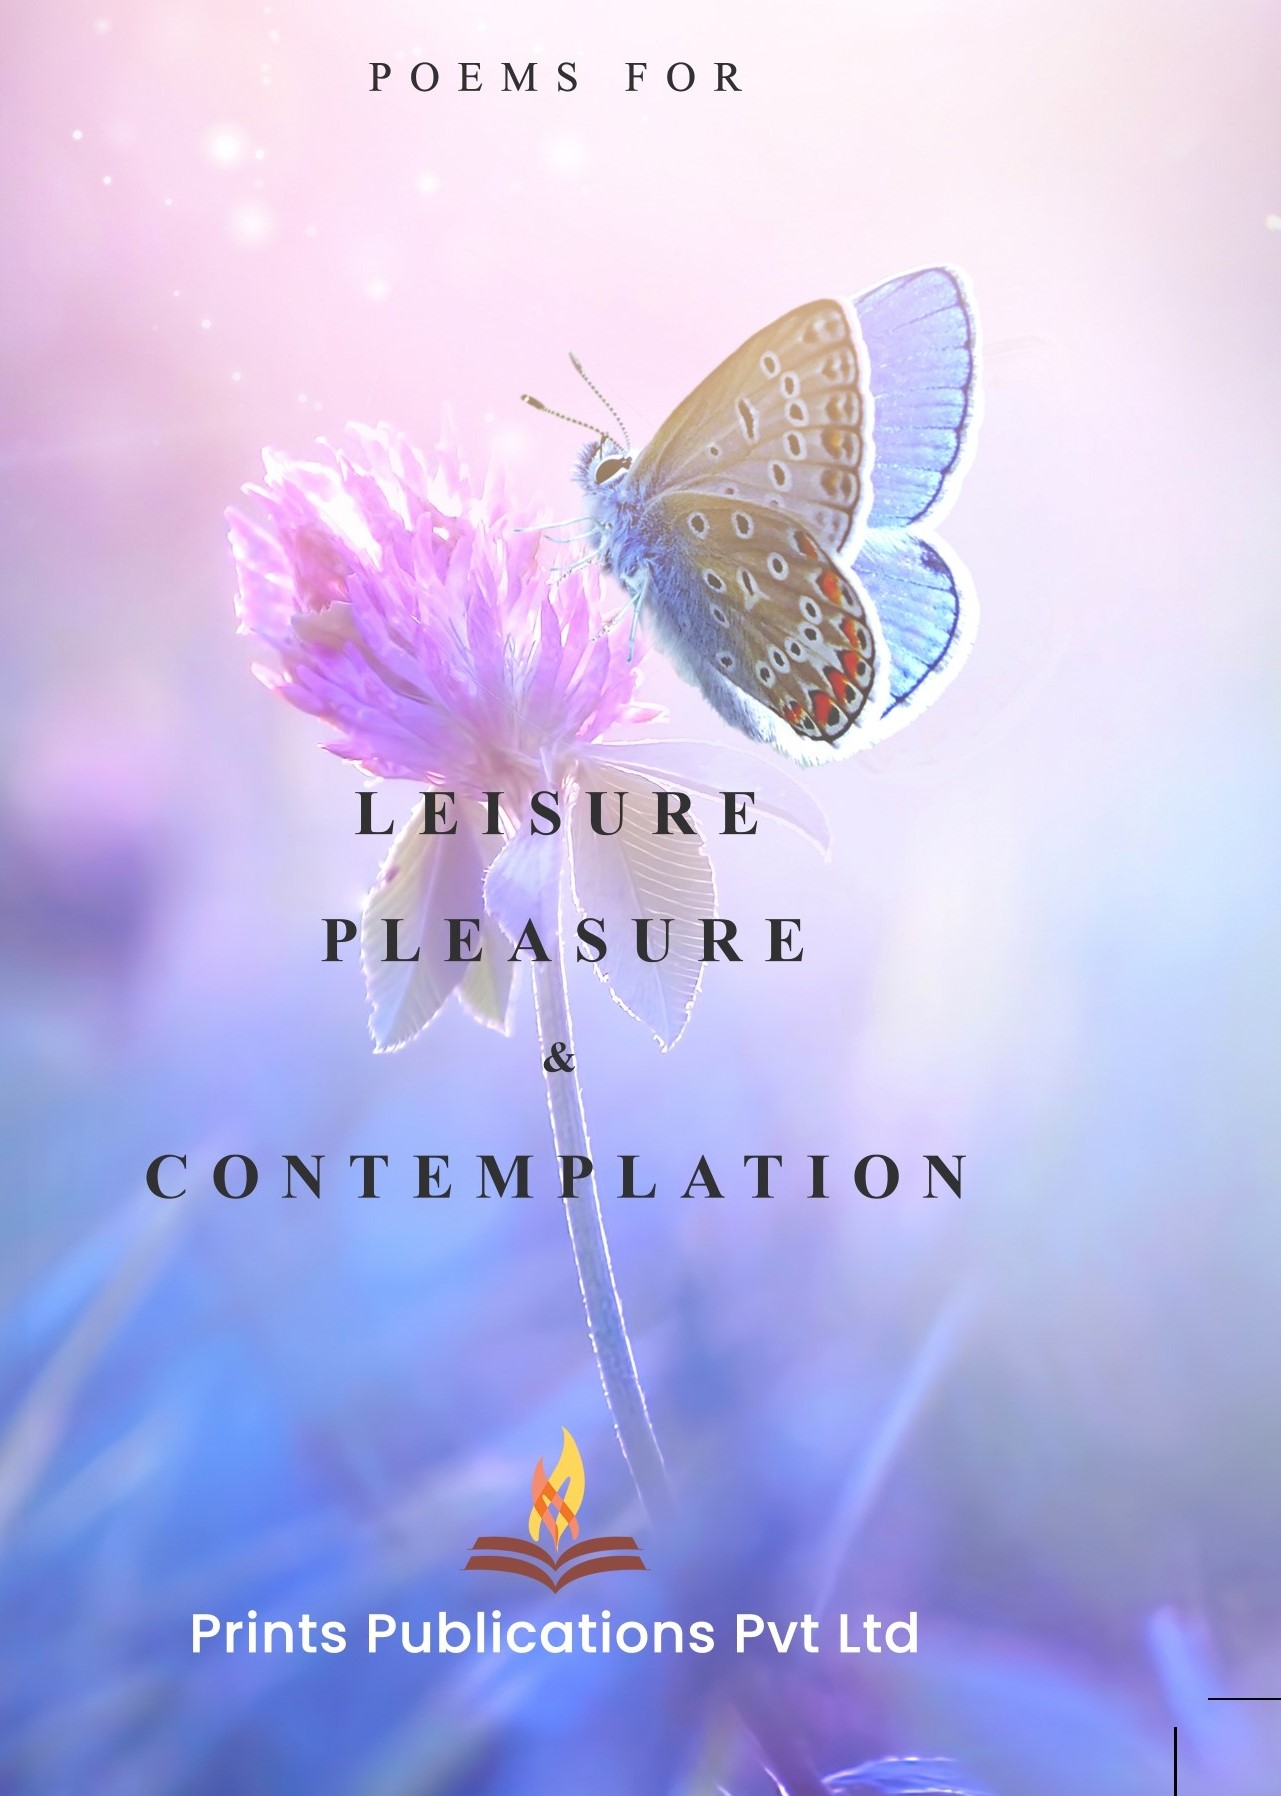 Poems for Leisure Pleasure & Contemplation